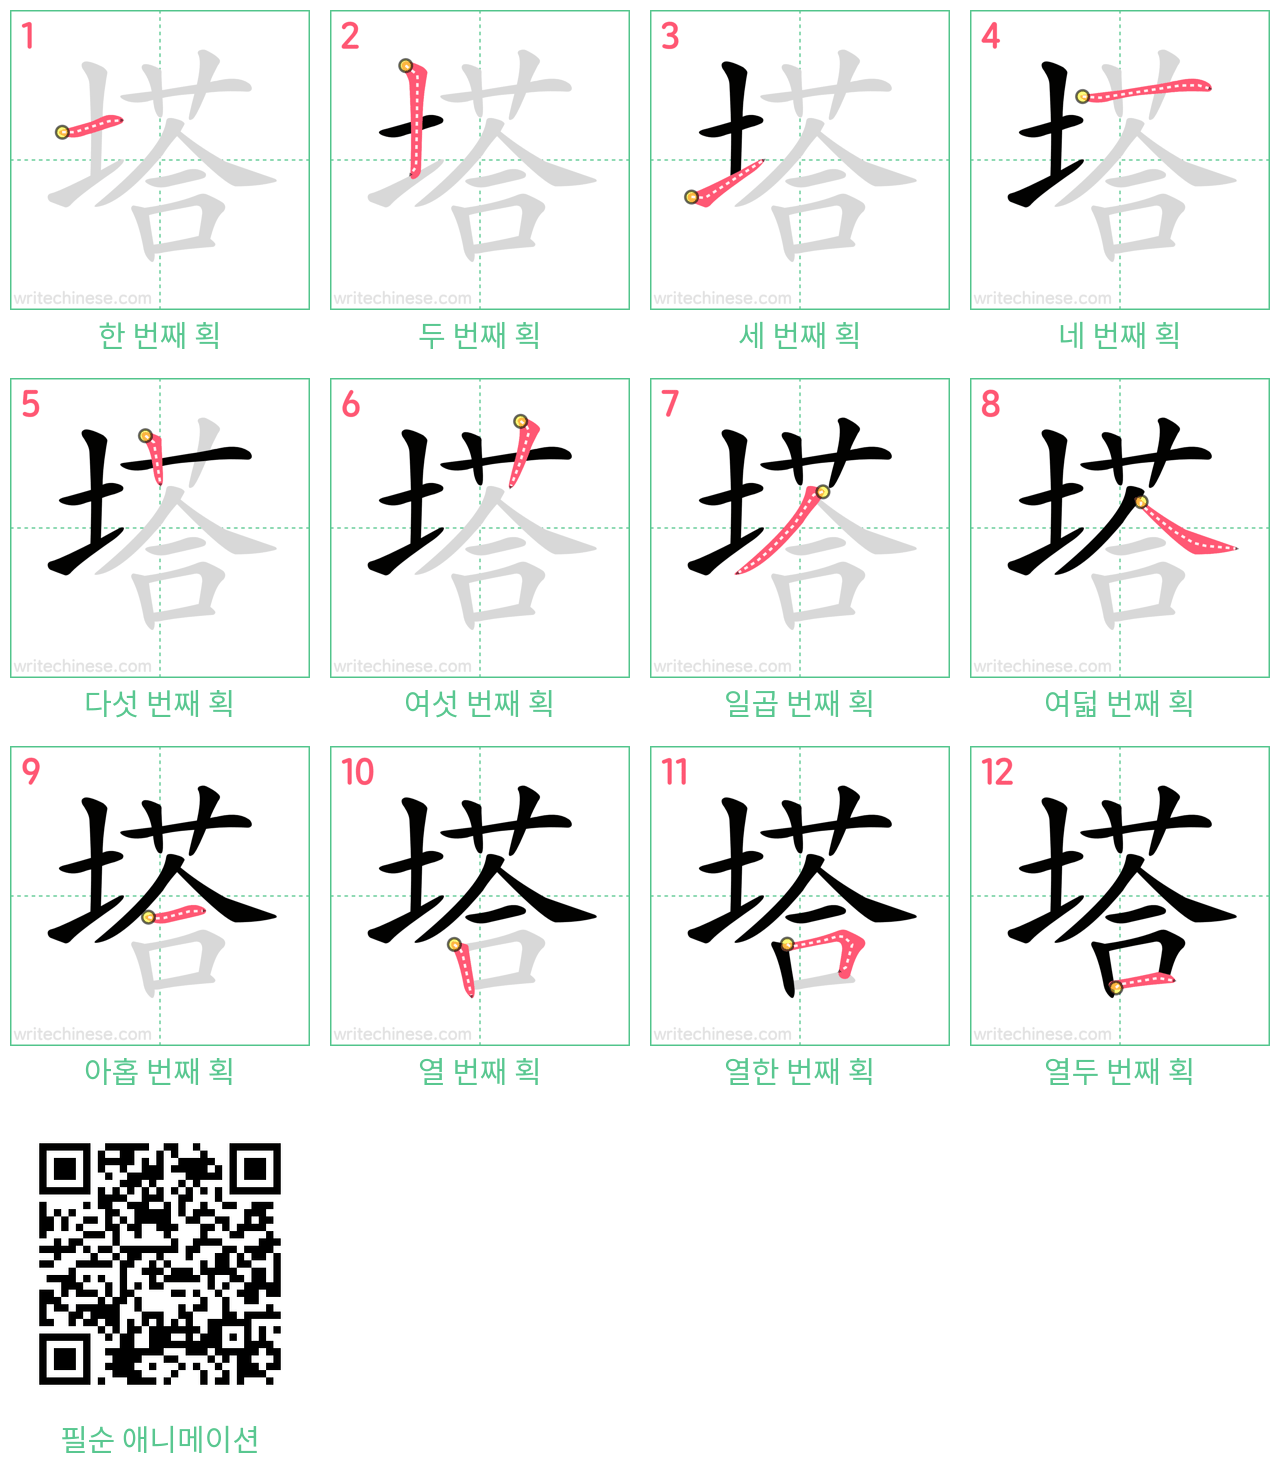 塔 step-by-step stroke order diagrams